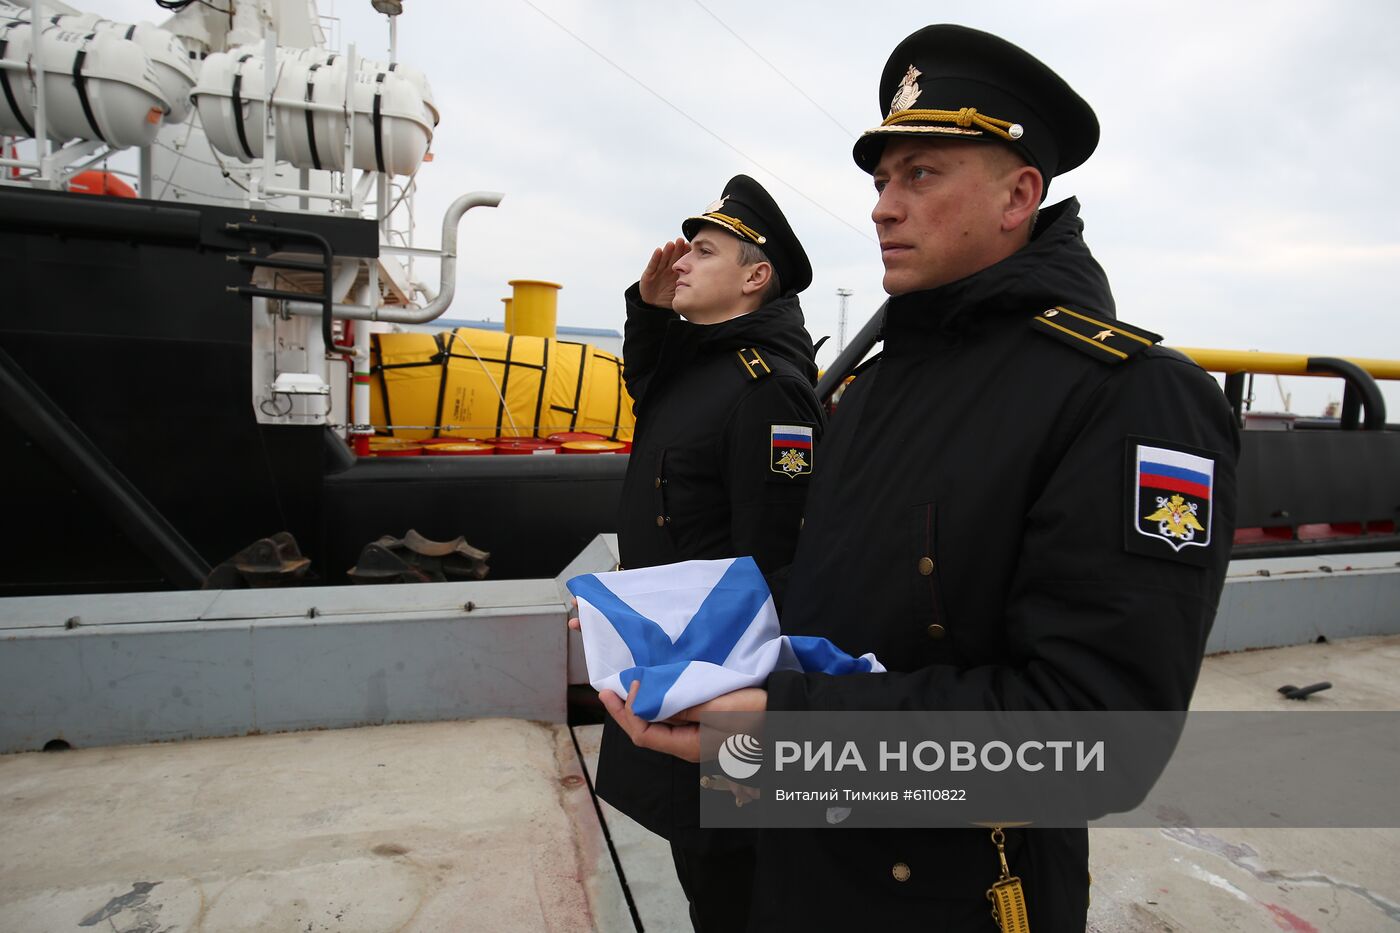 Поднятие Андреевского флага на спасательном буксире ЧФ "СБ-742"